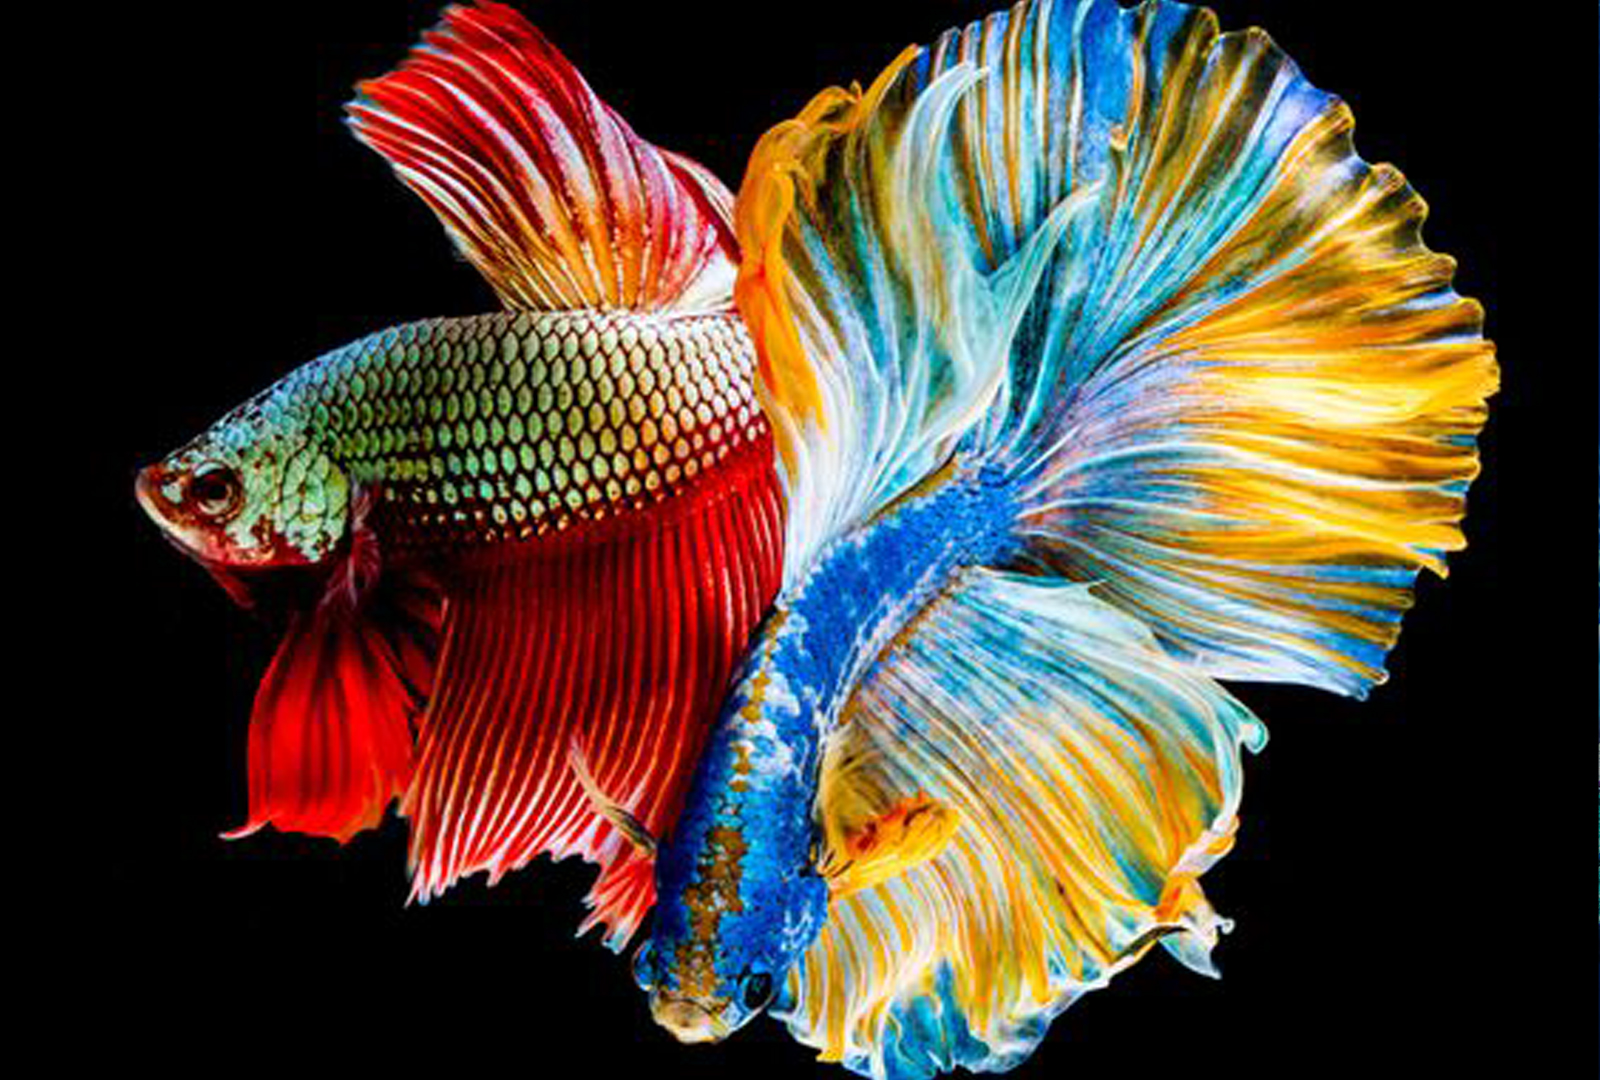 Hình ảnh con cá đẹp, tự nhiên, sinh động nhất